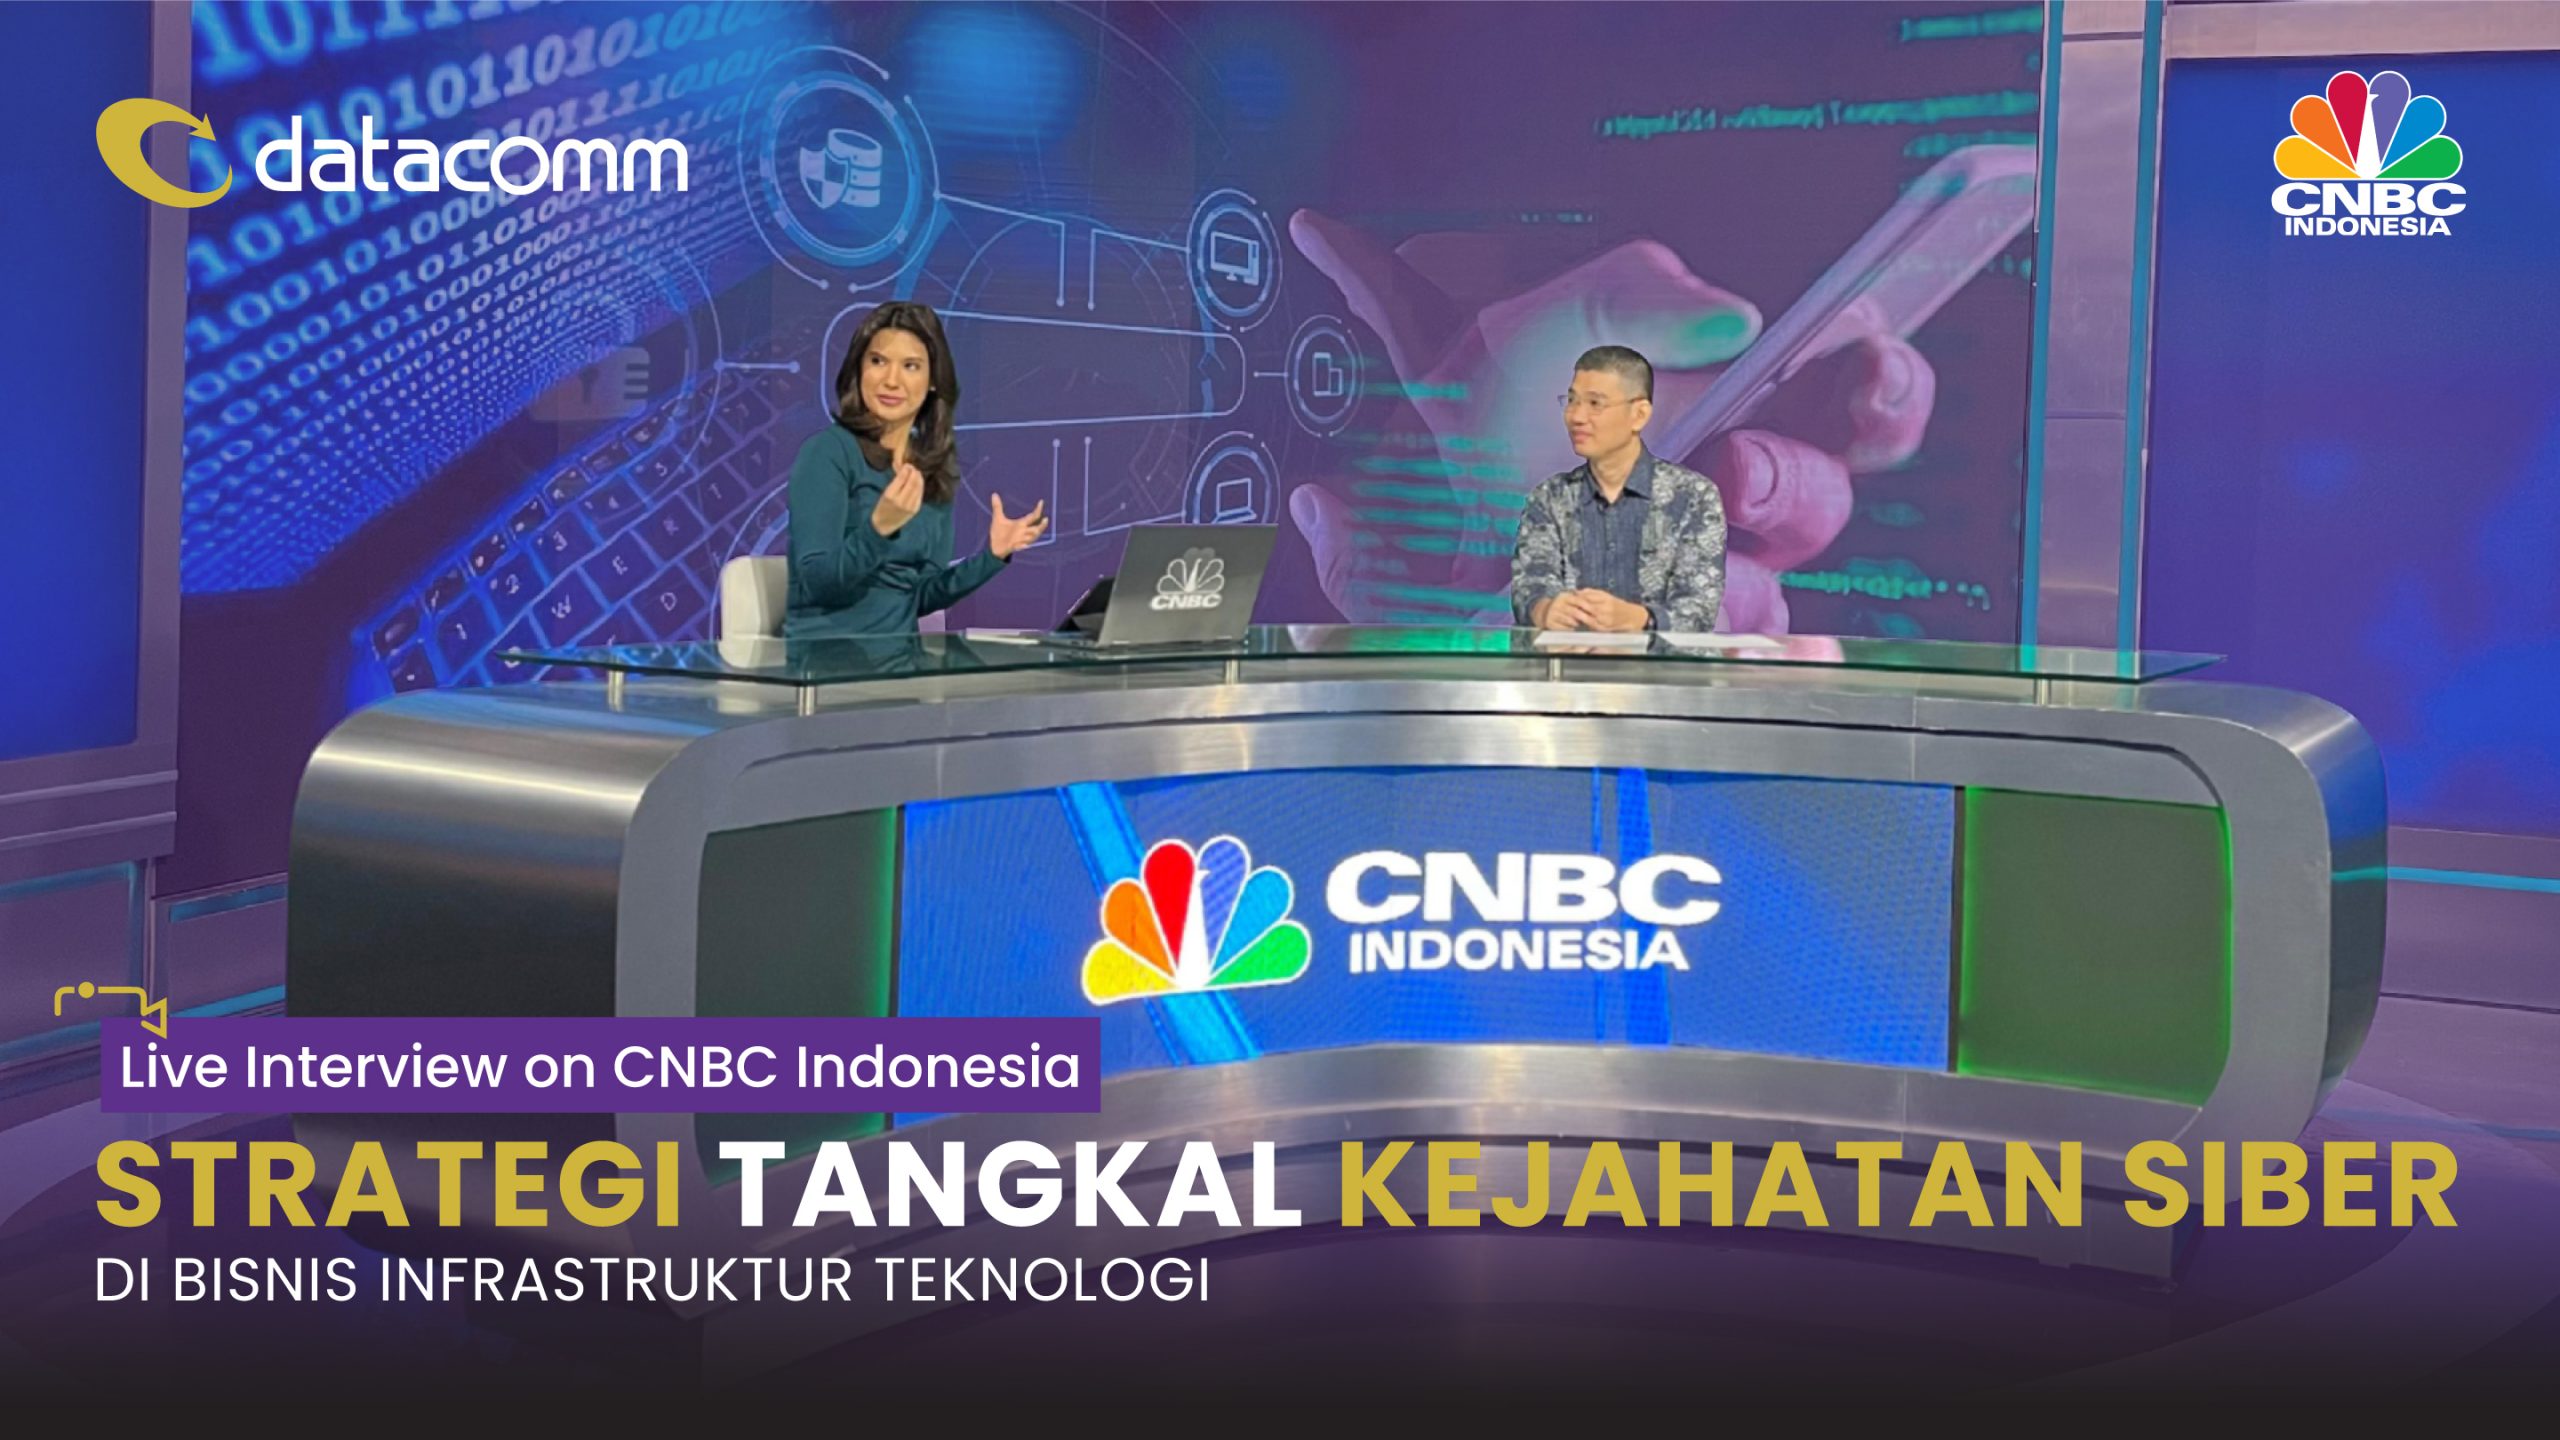 Datacomm in PROFIT CNBC Indonesia